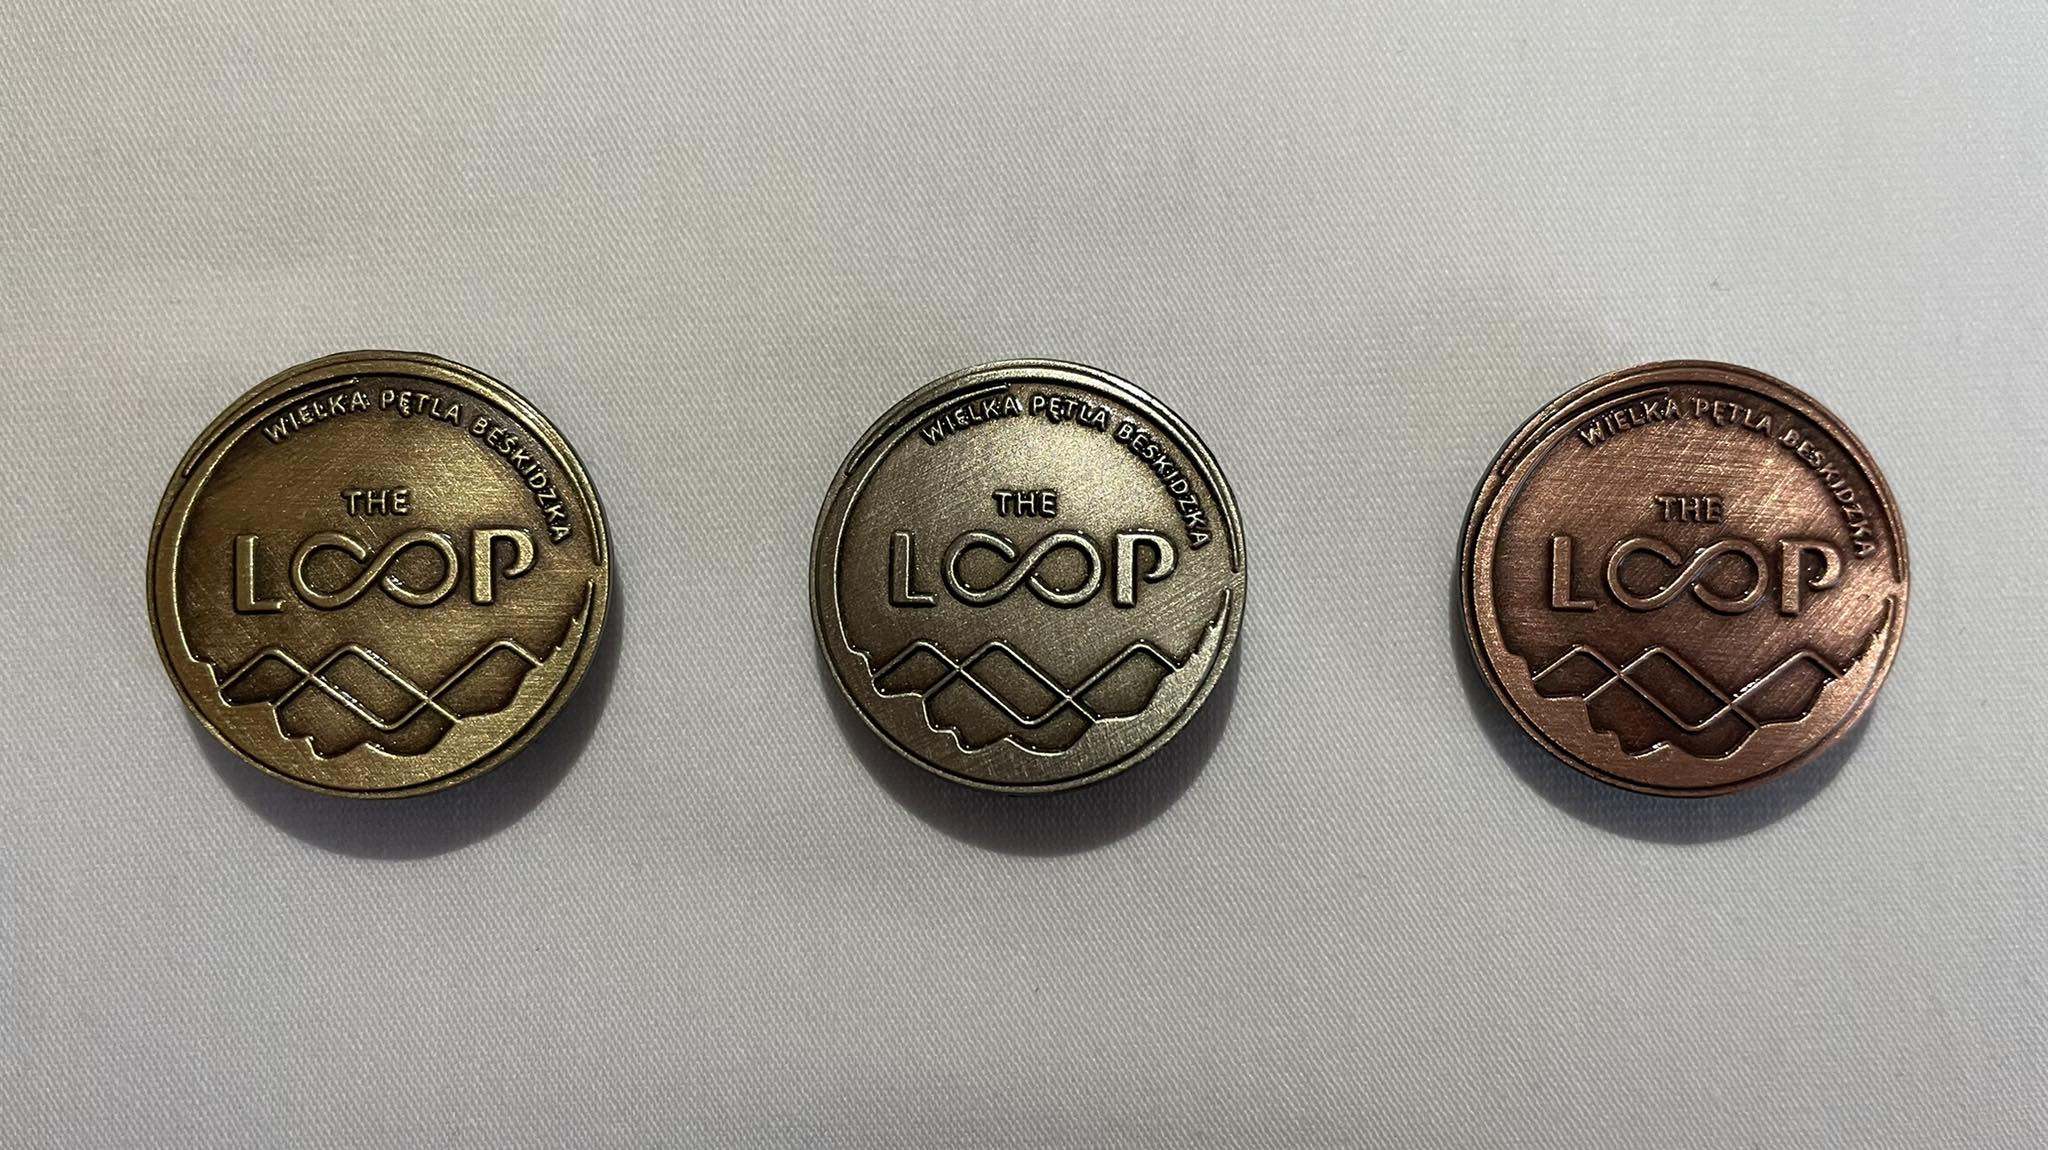 Odznaka za przejście The Loop